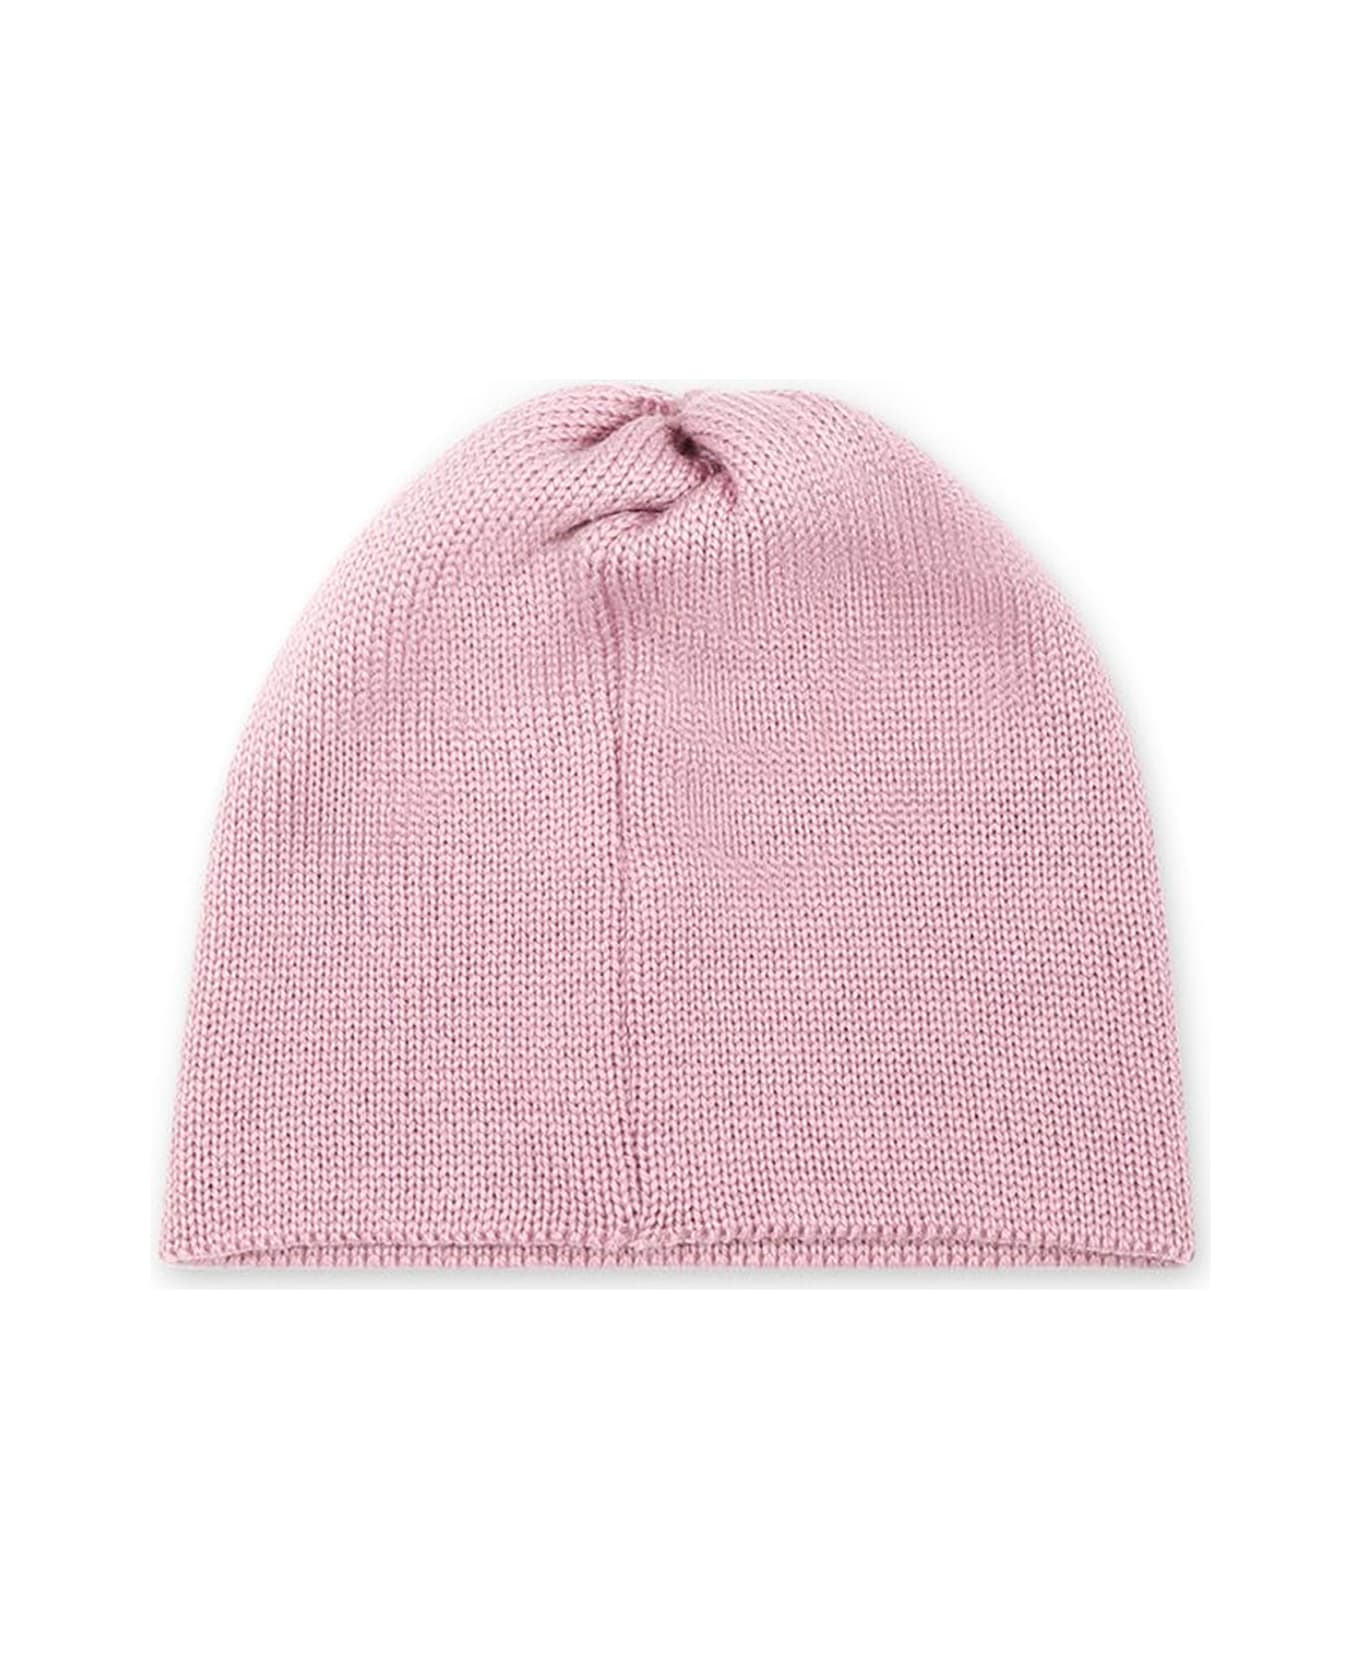 Little Bear Hats Pink - Pink